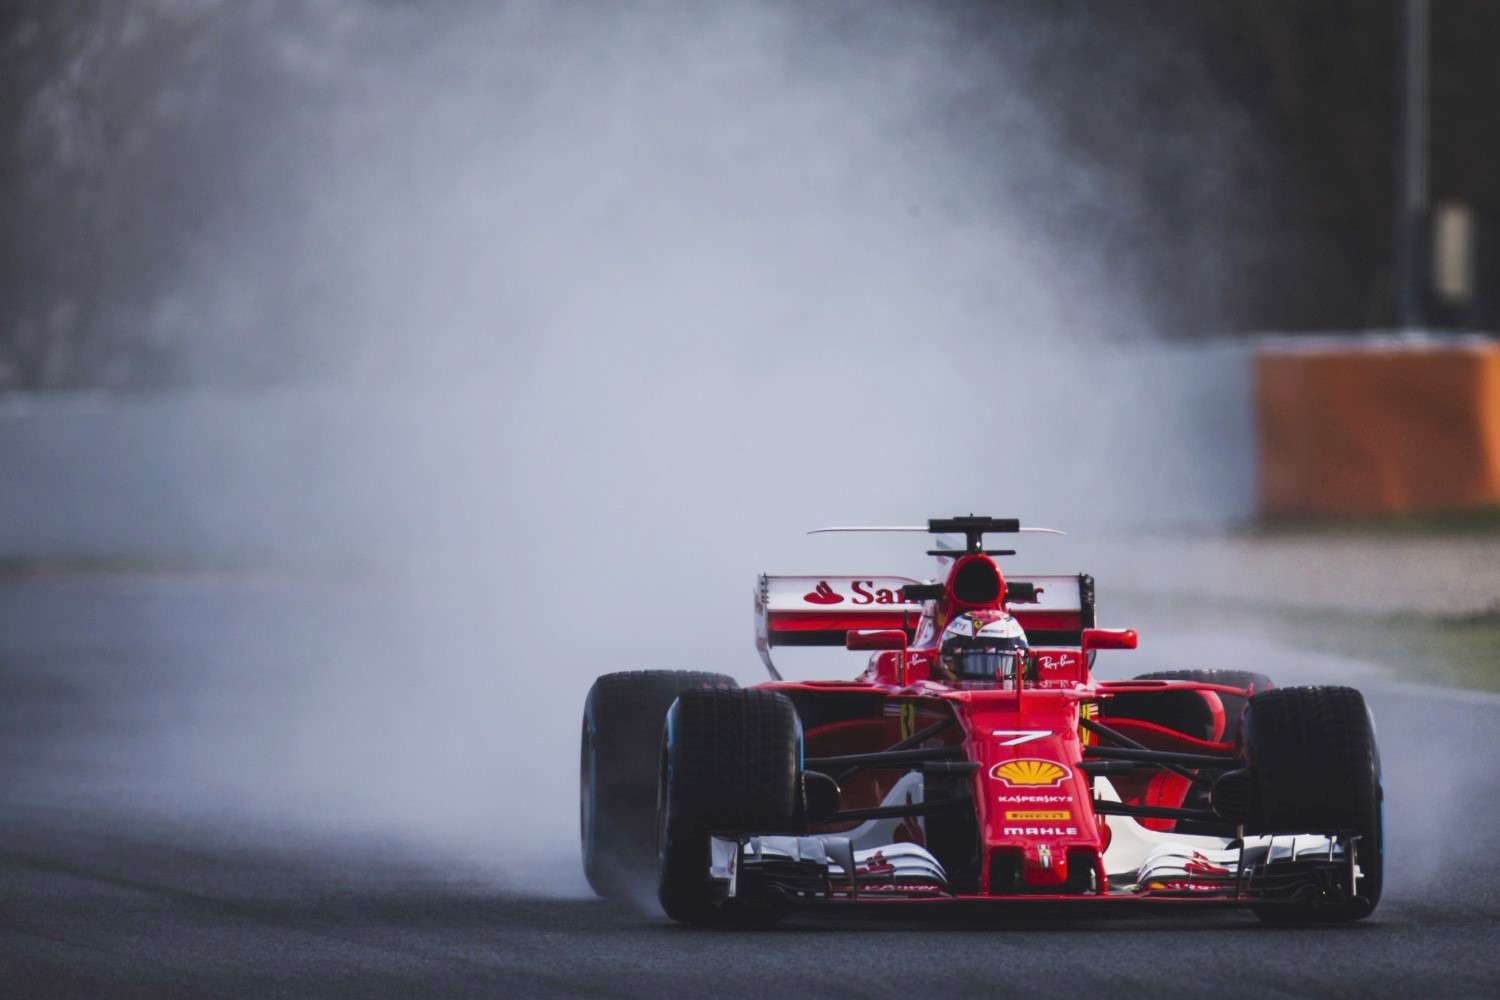 Kimi Raikkonen testing the new rain tires Thursday in Barcelona